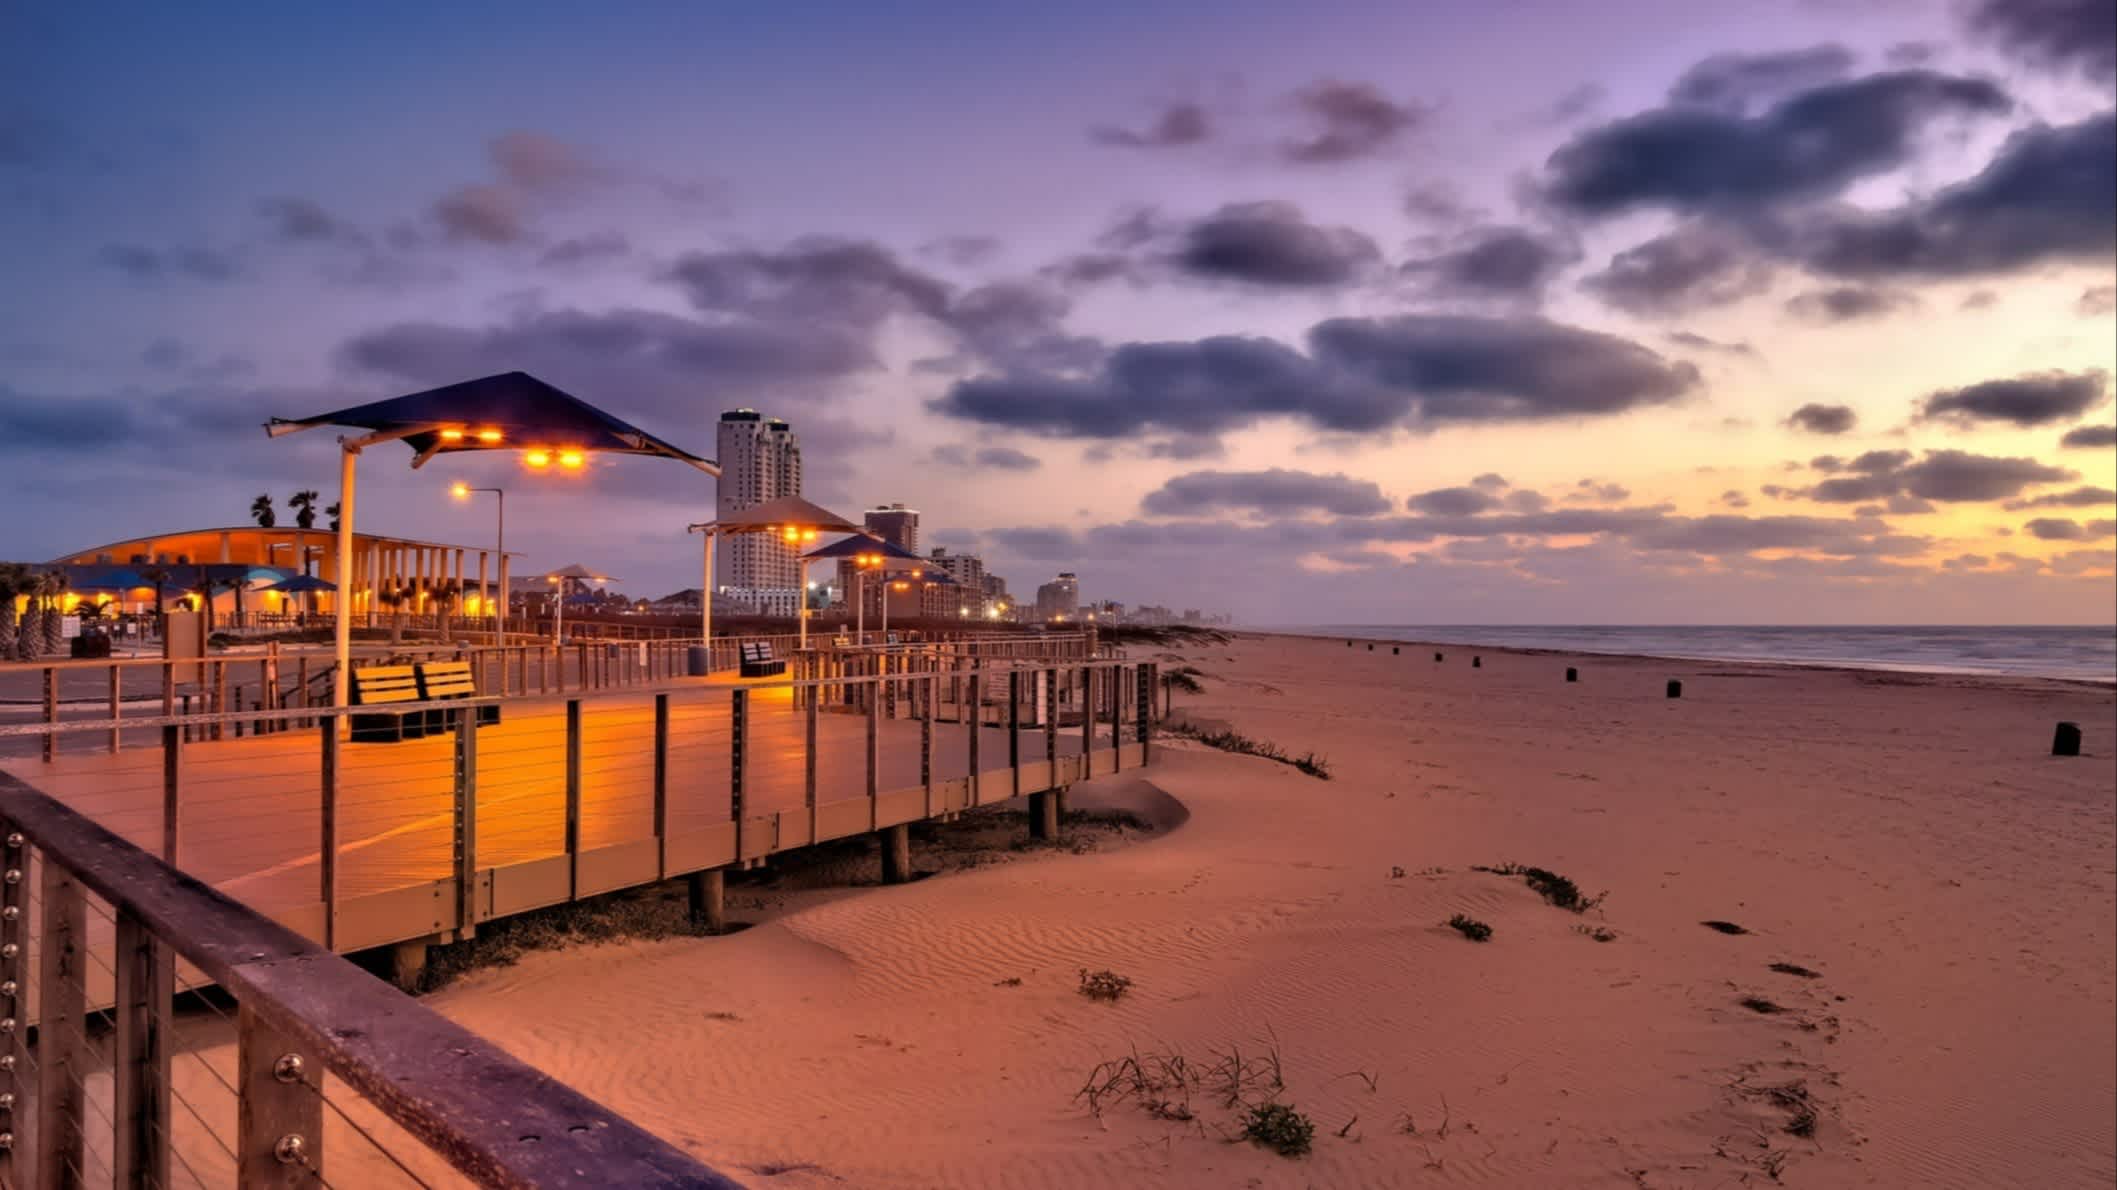 Der Strand Isla Blanca Beach, South Padre Island, Texas, USA bei Abenddämmerung mit Blick auf die beleuchtete Promenade.